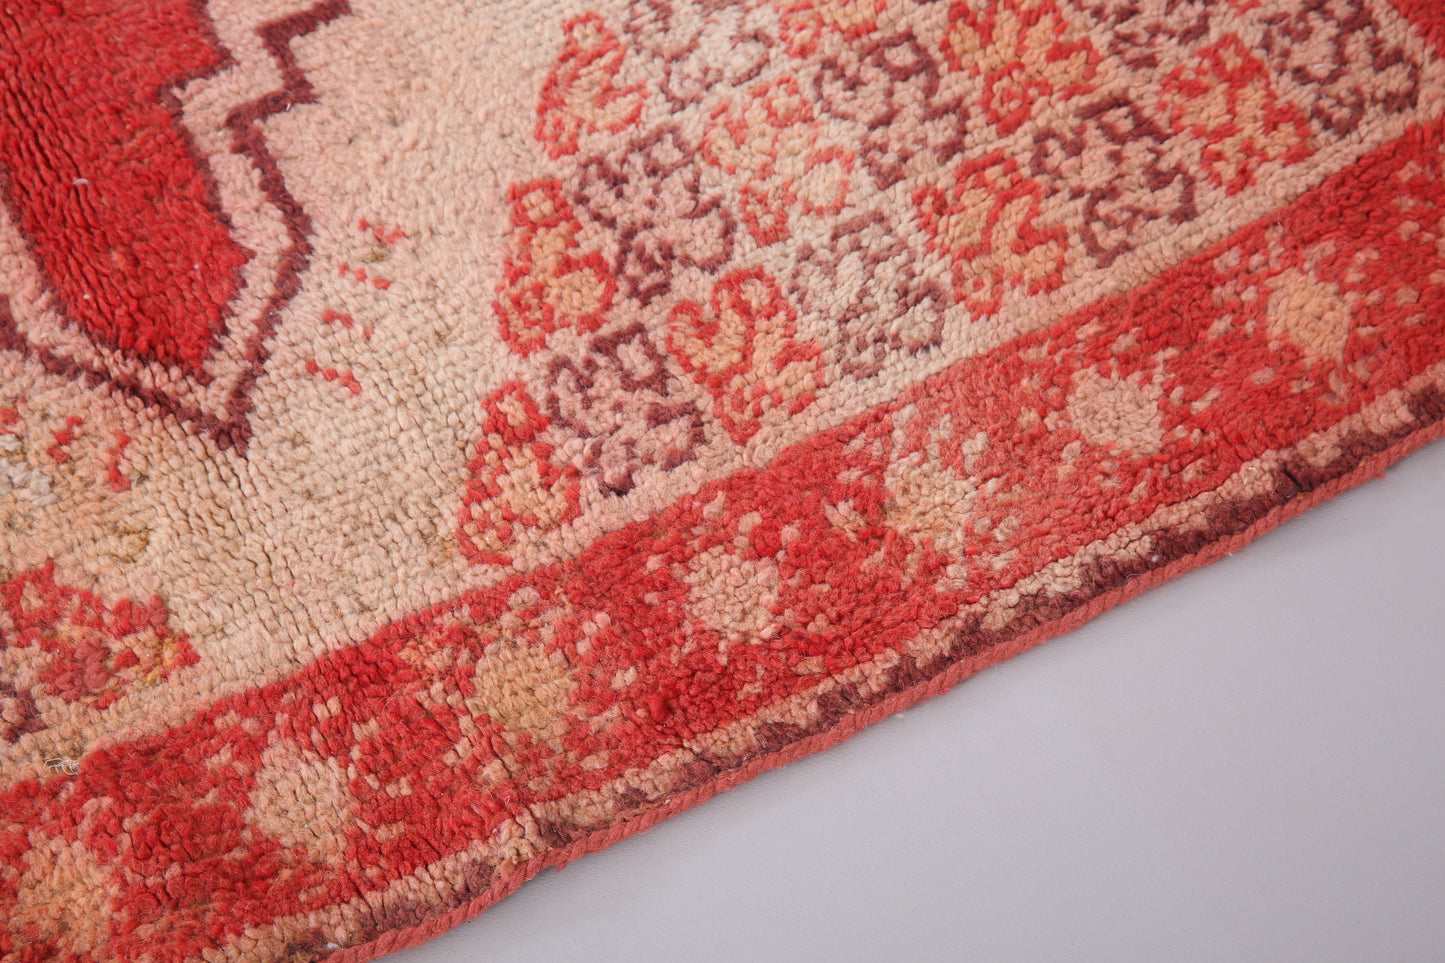 Roter marokkanischer Vintage-Teppich 5,2 FT x 9 FT - roter marokkanischer Teppich - Vintage-Tribal-Teppich - handgemachter Berberteppich - einzigartiger Vintage-Teppich - Boho-Teppich